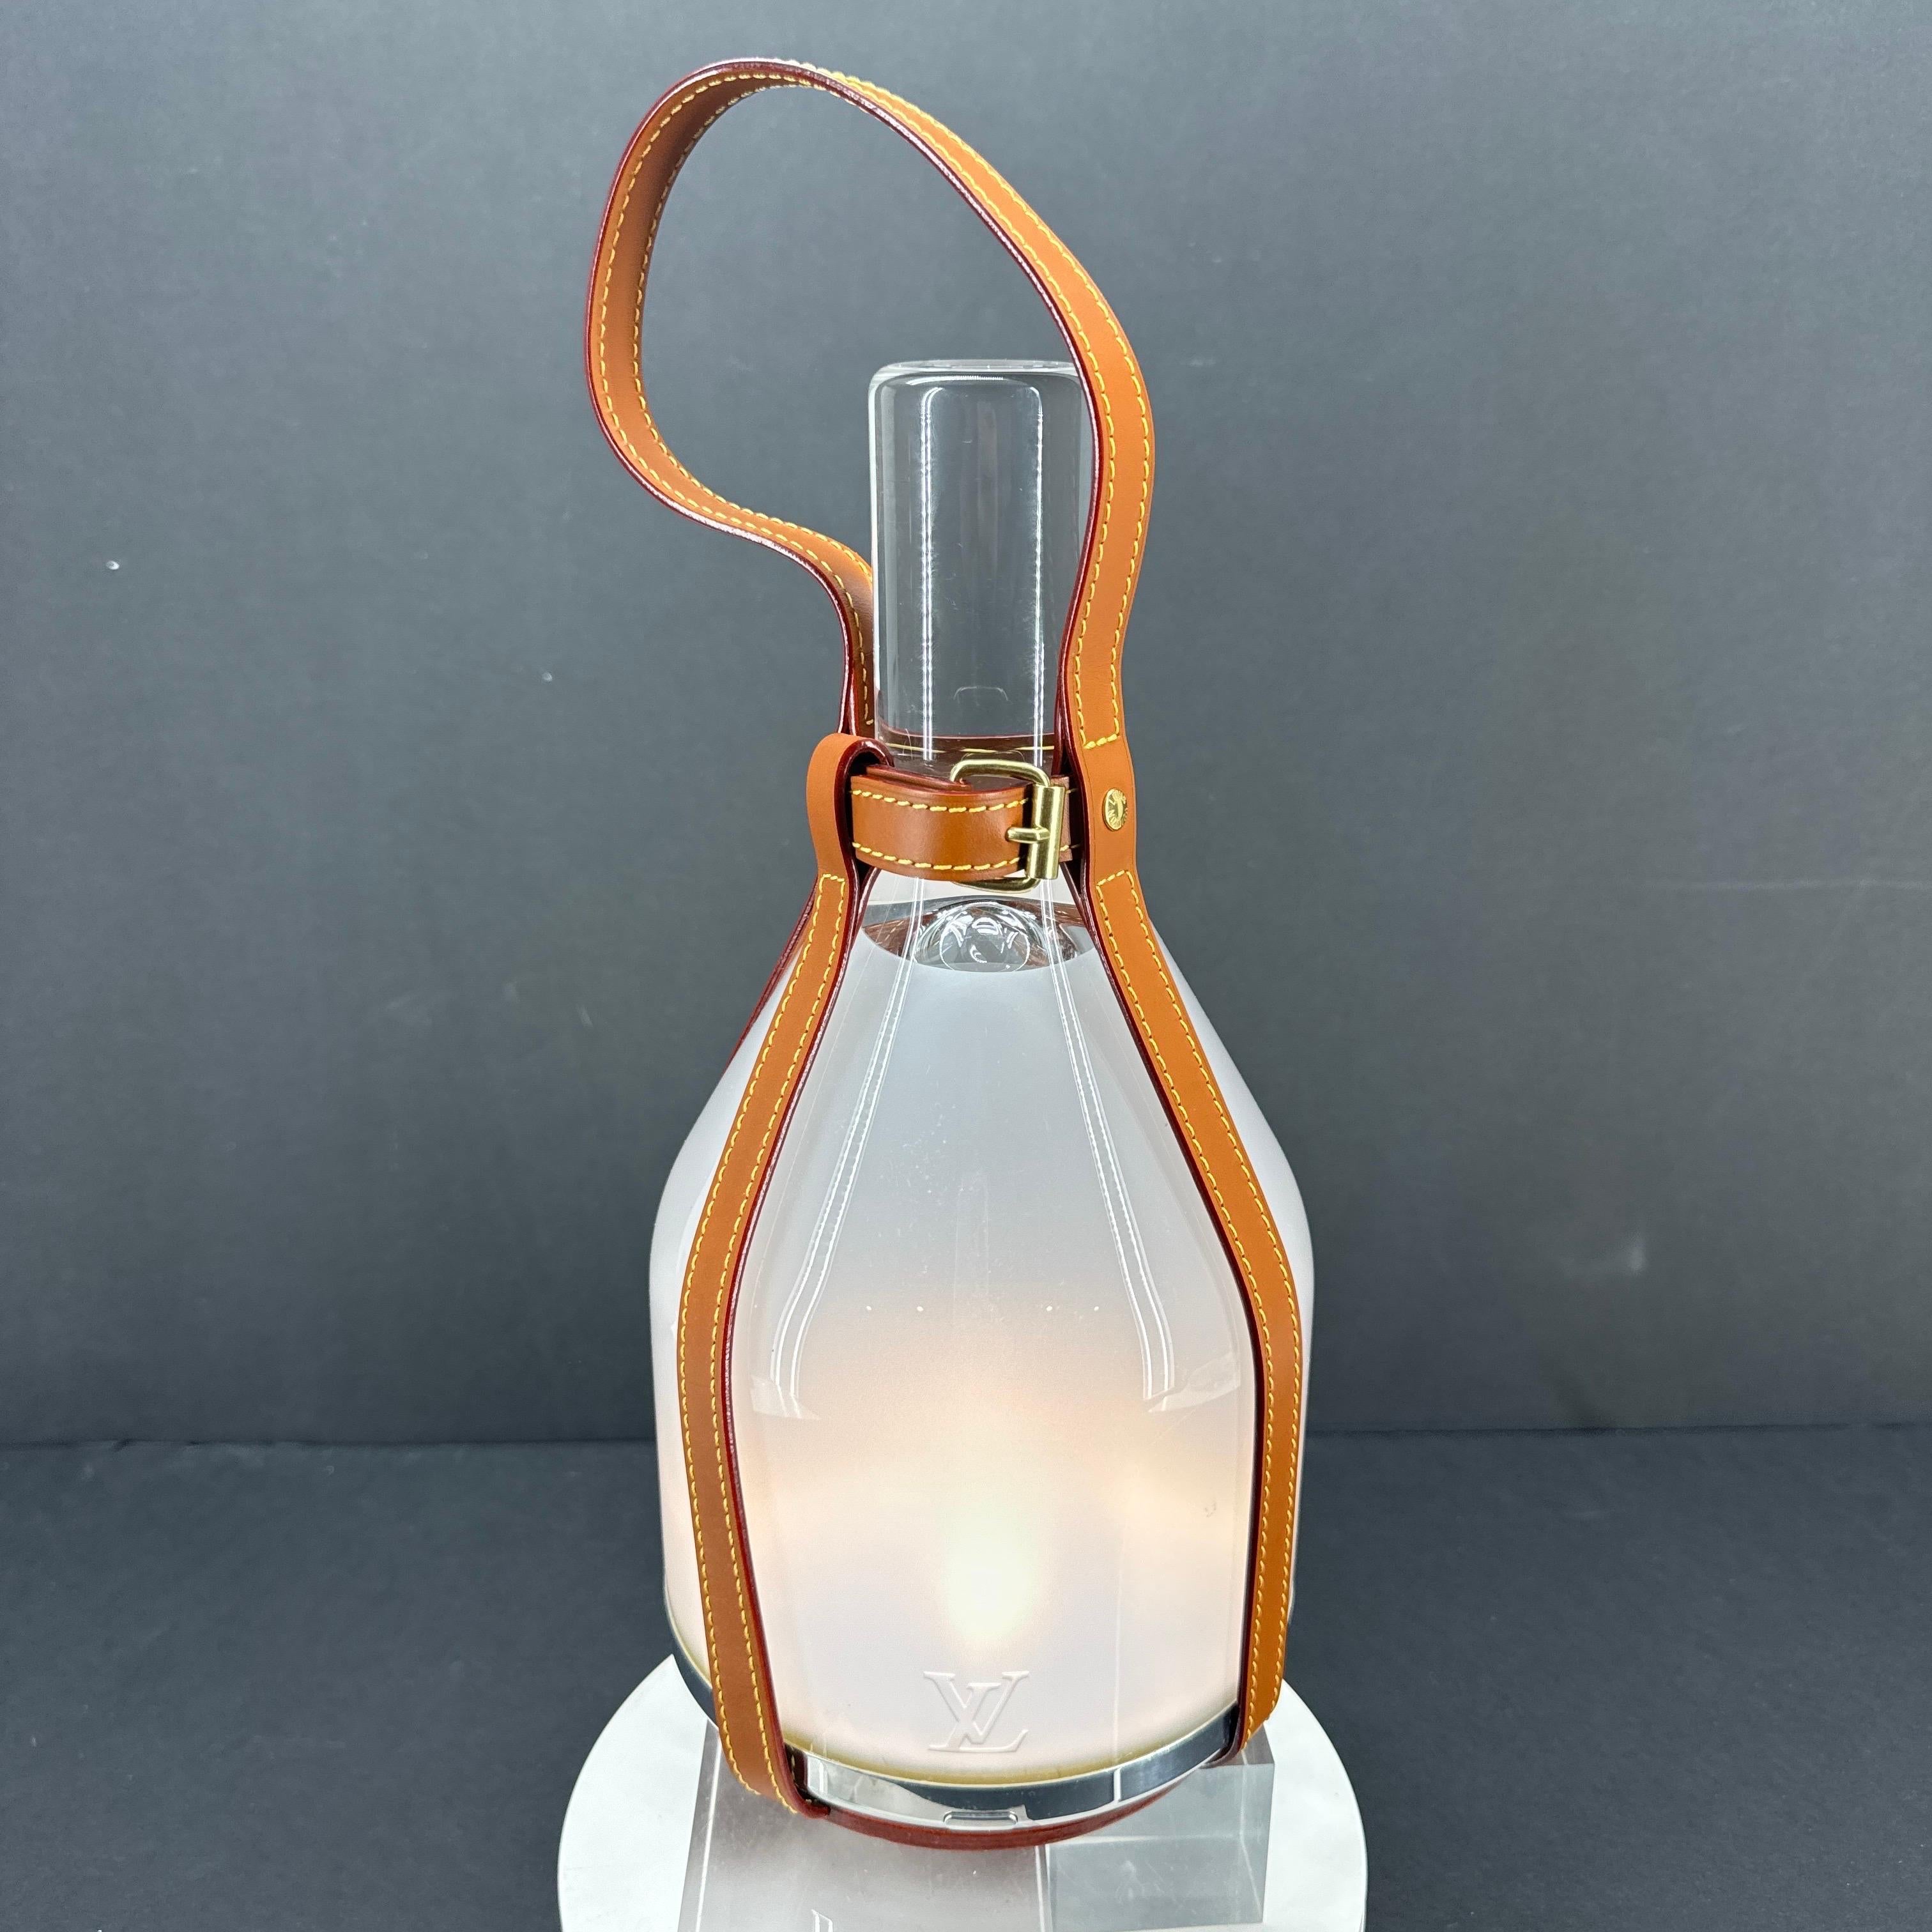 Lampe de table LV Bell en verre dépoli et transparent avec lanières de cuir caramel par Louis Vuitton, France.

Les designers Edward Barber et Jay Osgerby ont combiné le moderne et le traditionnel dans cette fantastique lampe de table de Louis